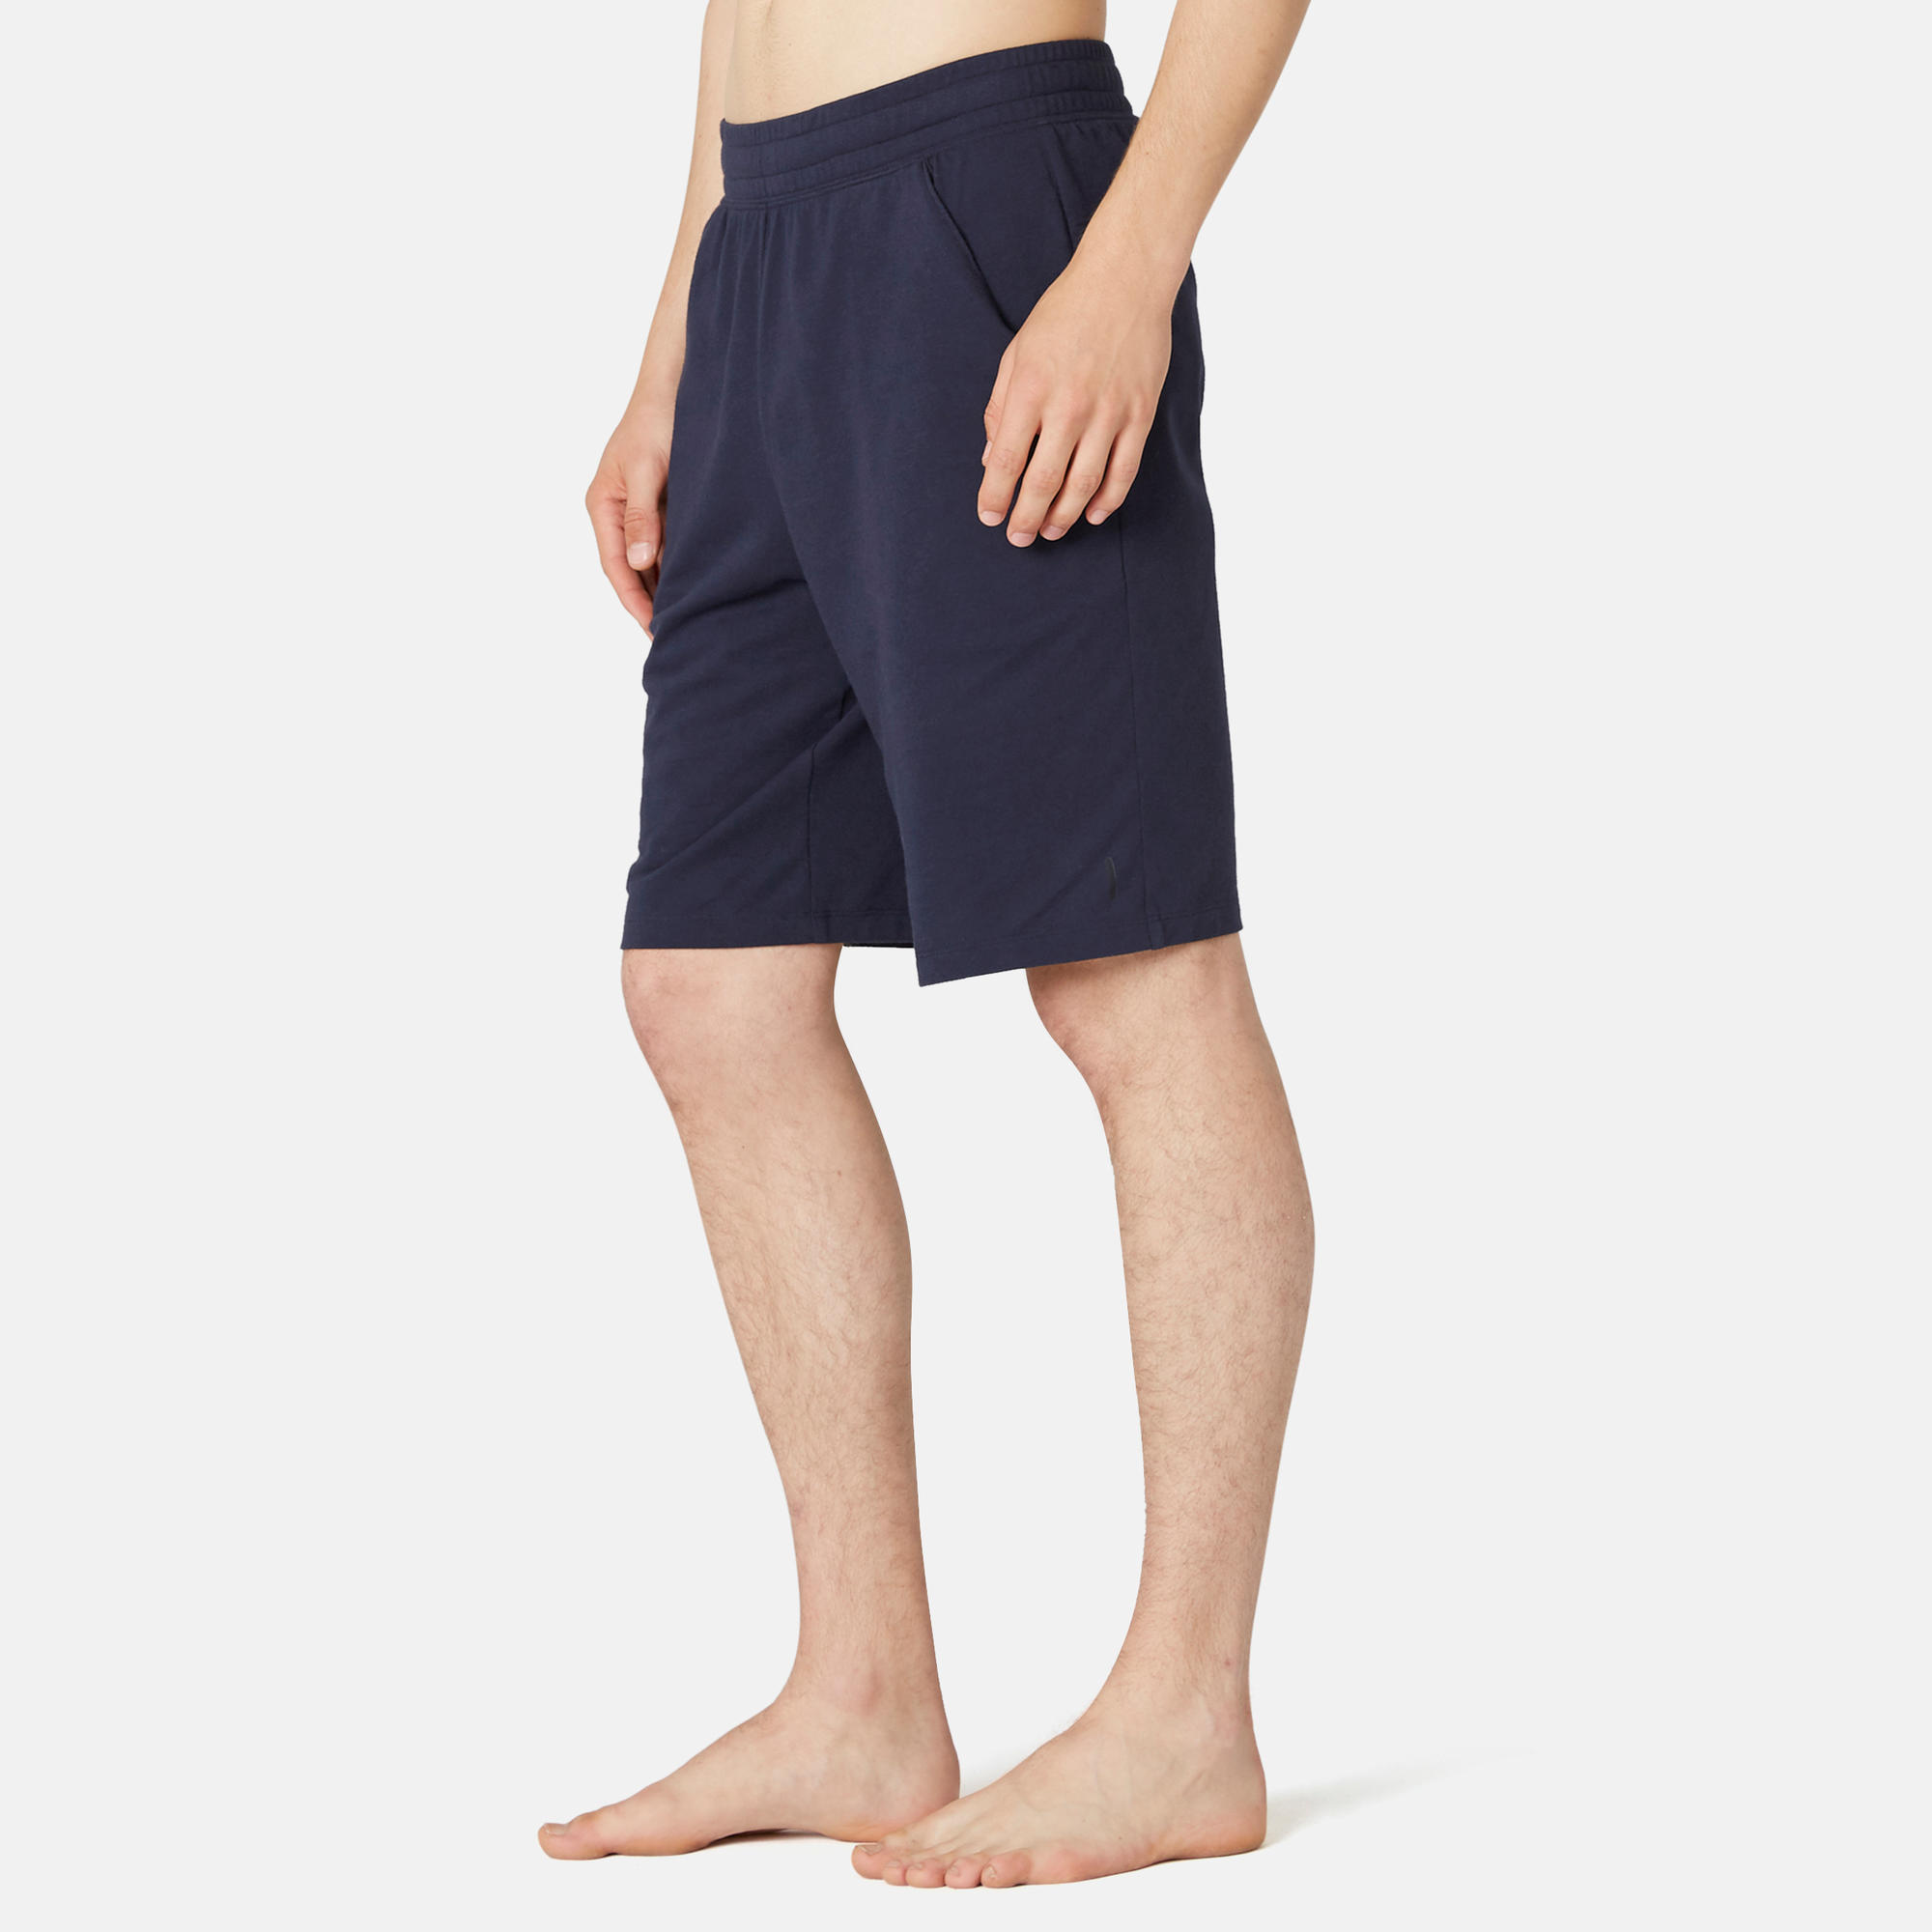 shorts for men under 500